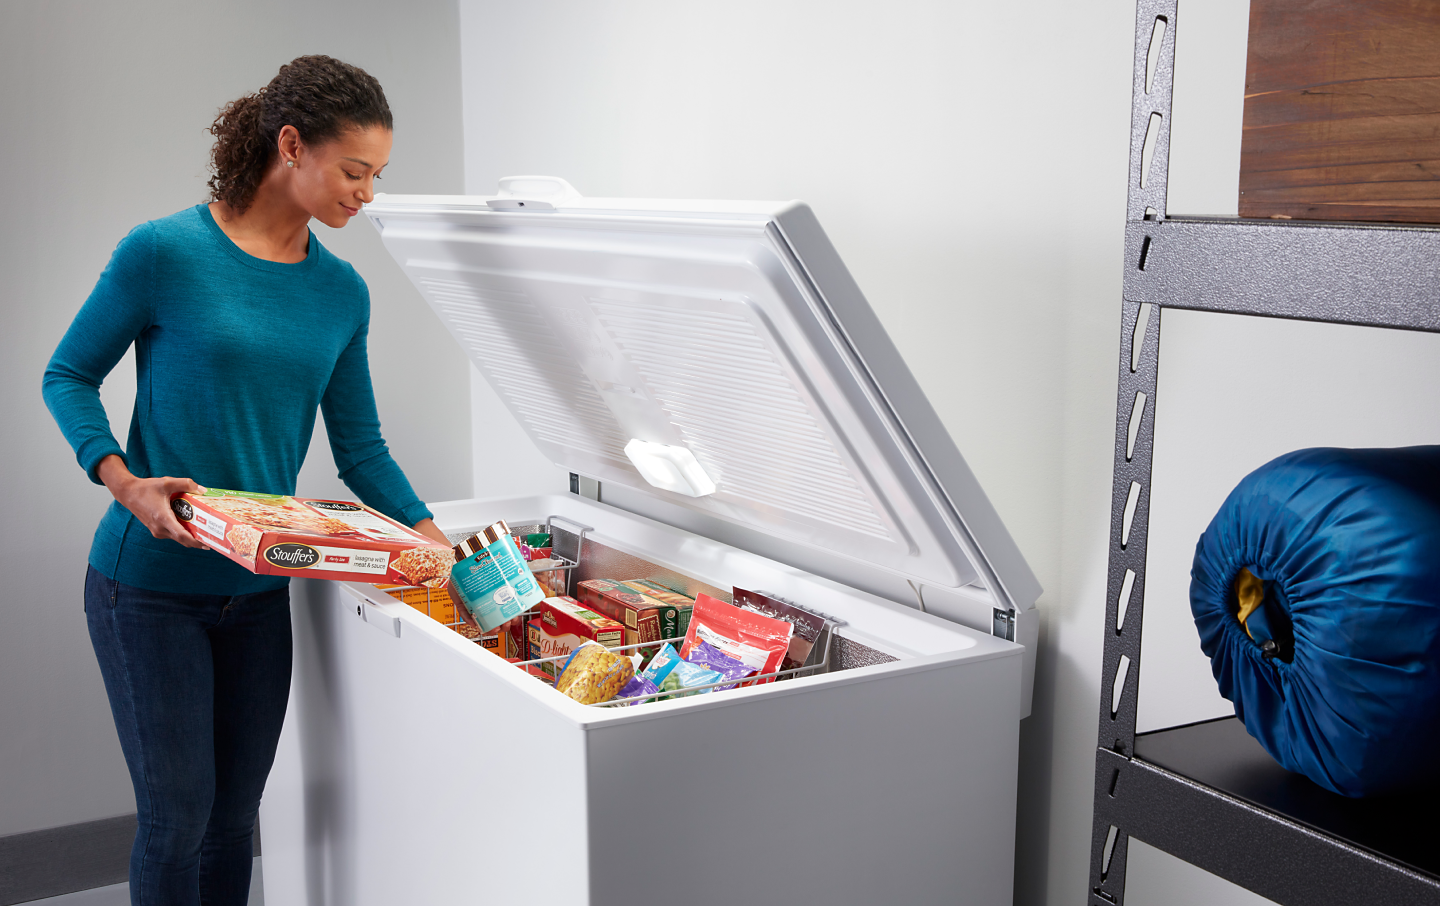 Chest freezer 3.5 cu ft - appliances - by owner - sale - craigslist